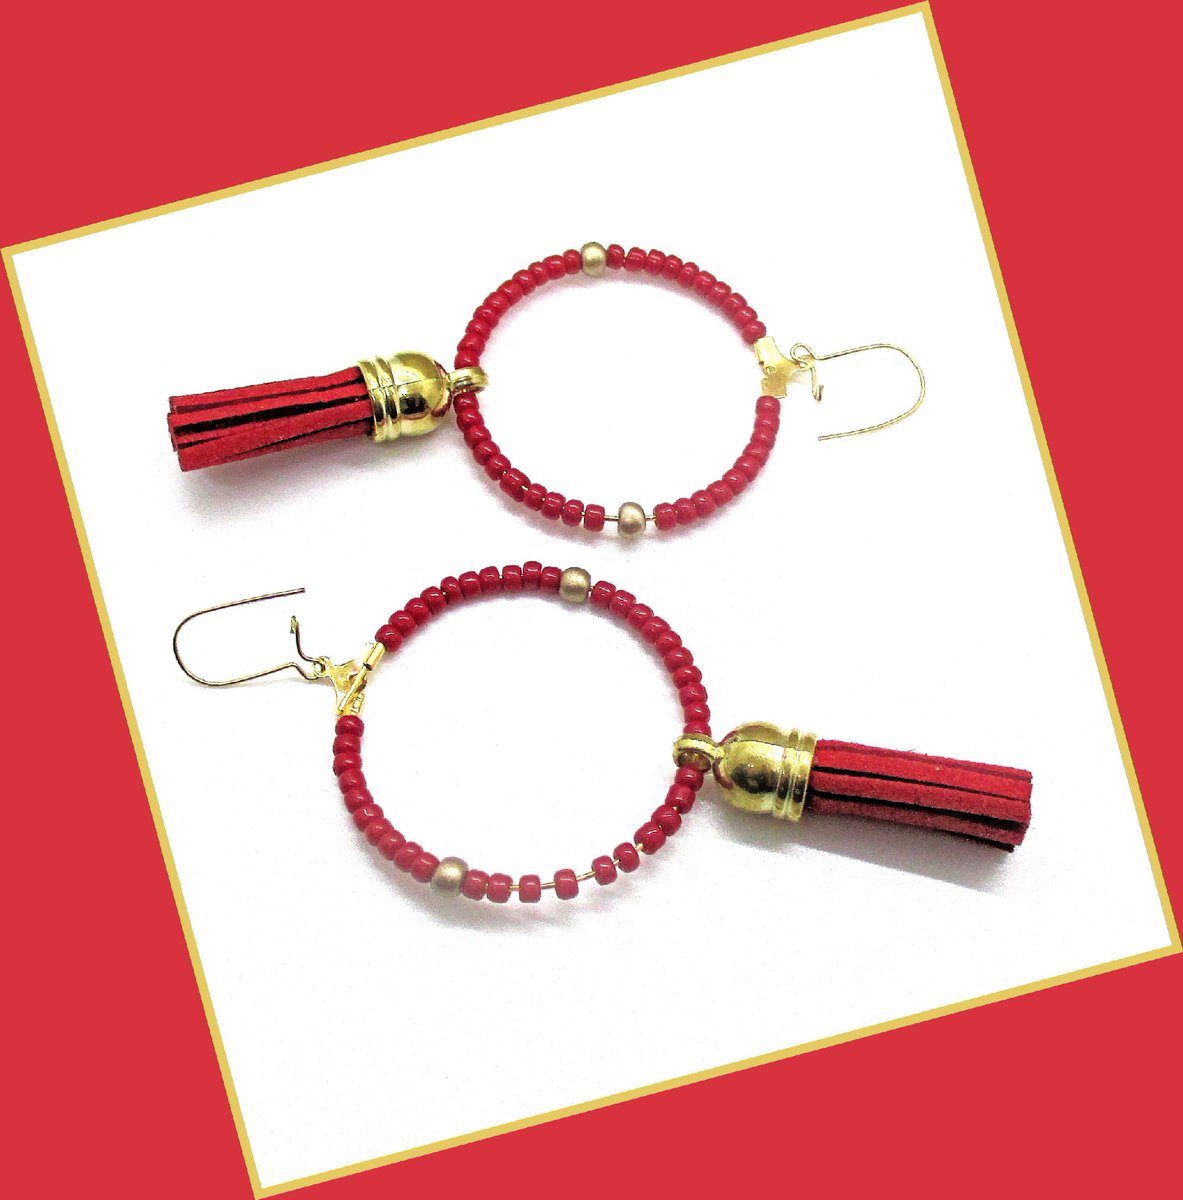 jewelrybyscotti.etsy.com/listing/146748…

Red Suede Tassel Earrings on Gold Tone Hoops

#jewelrybyscotti #wiseshopper #redearrings